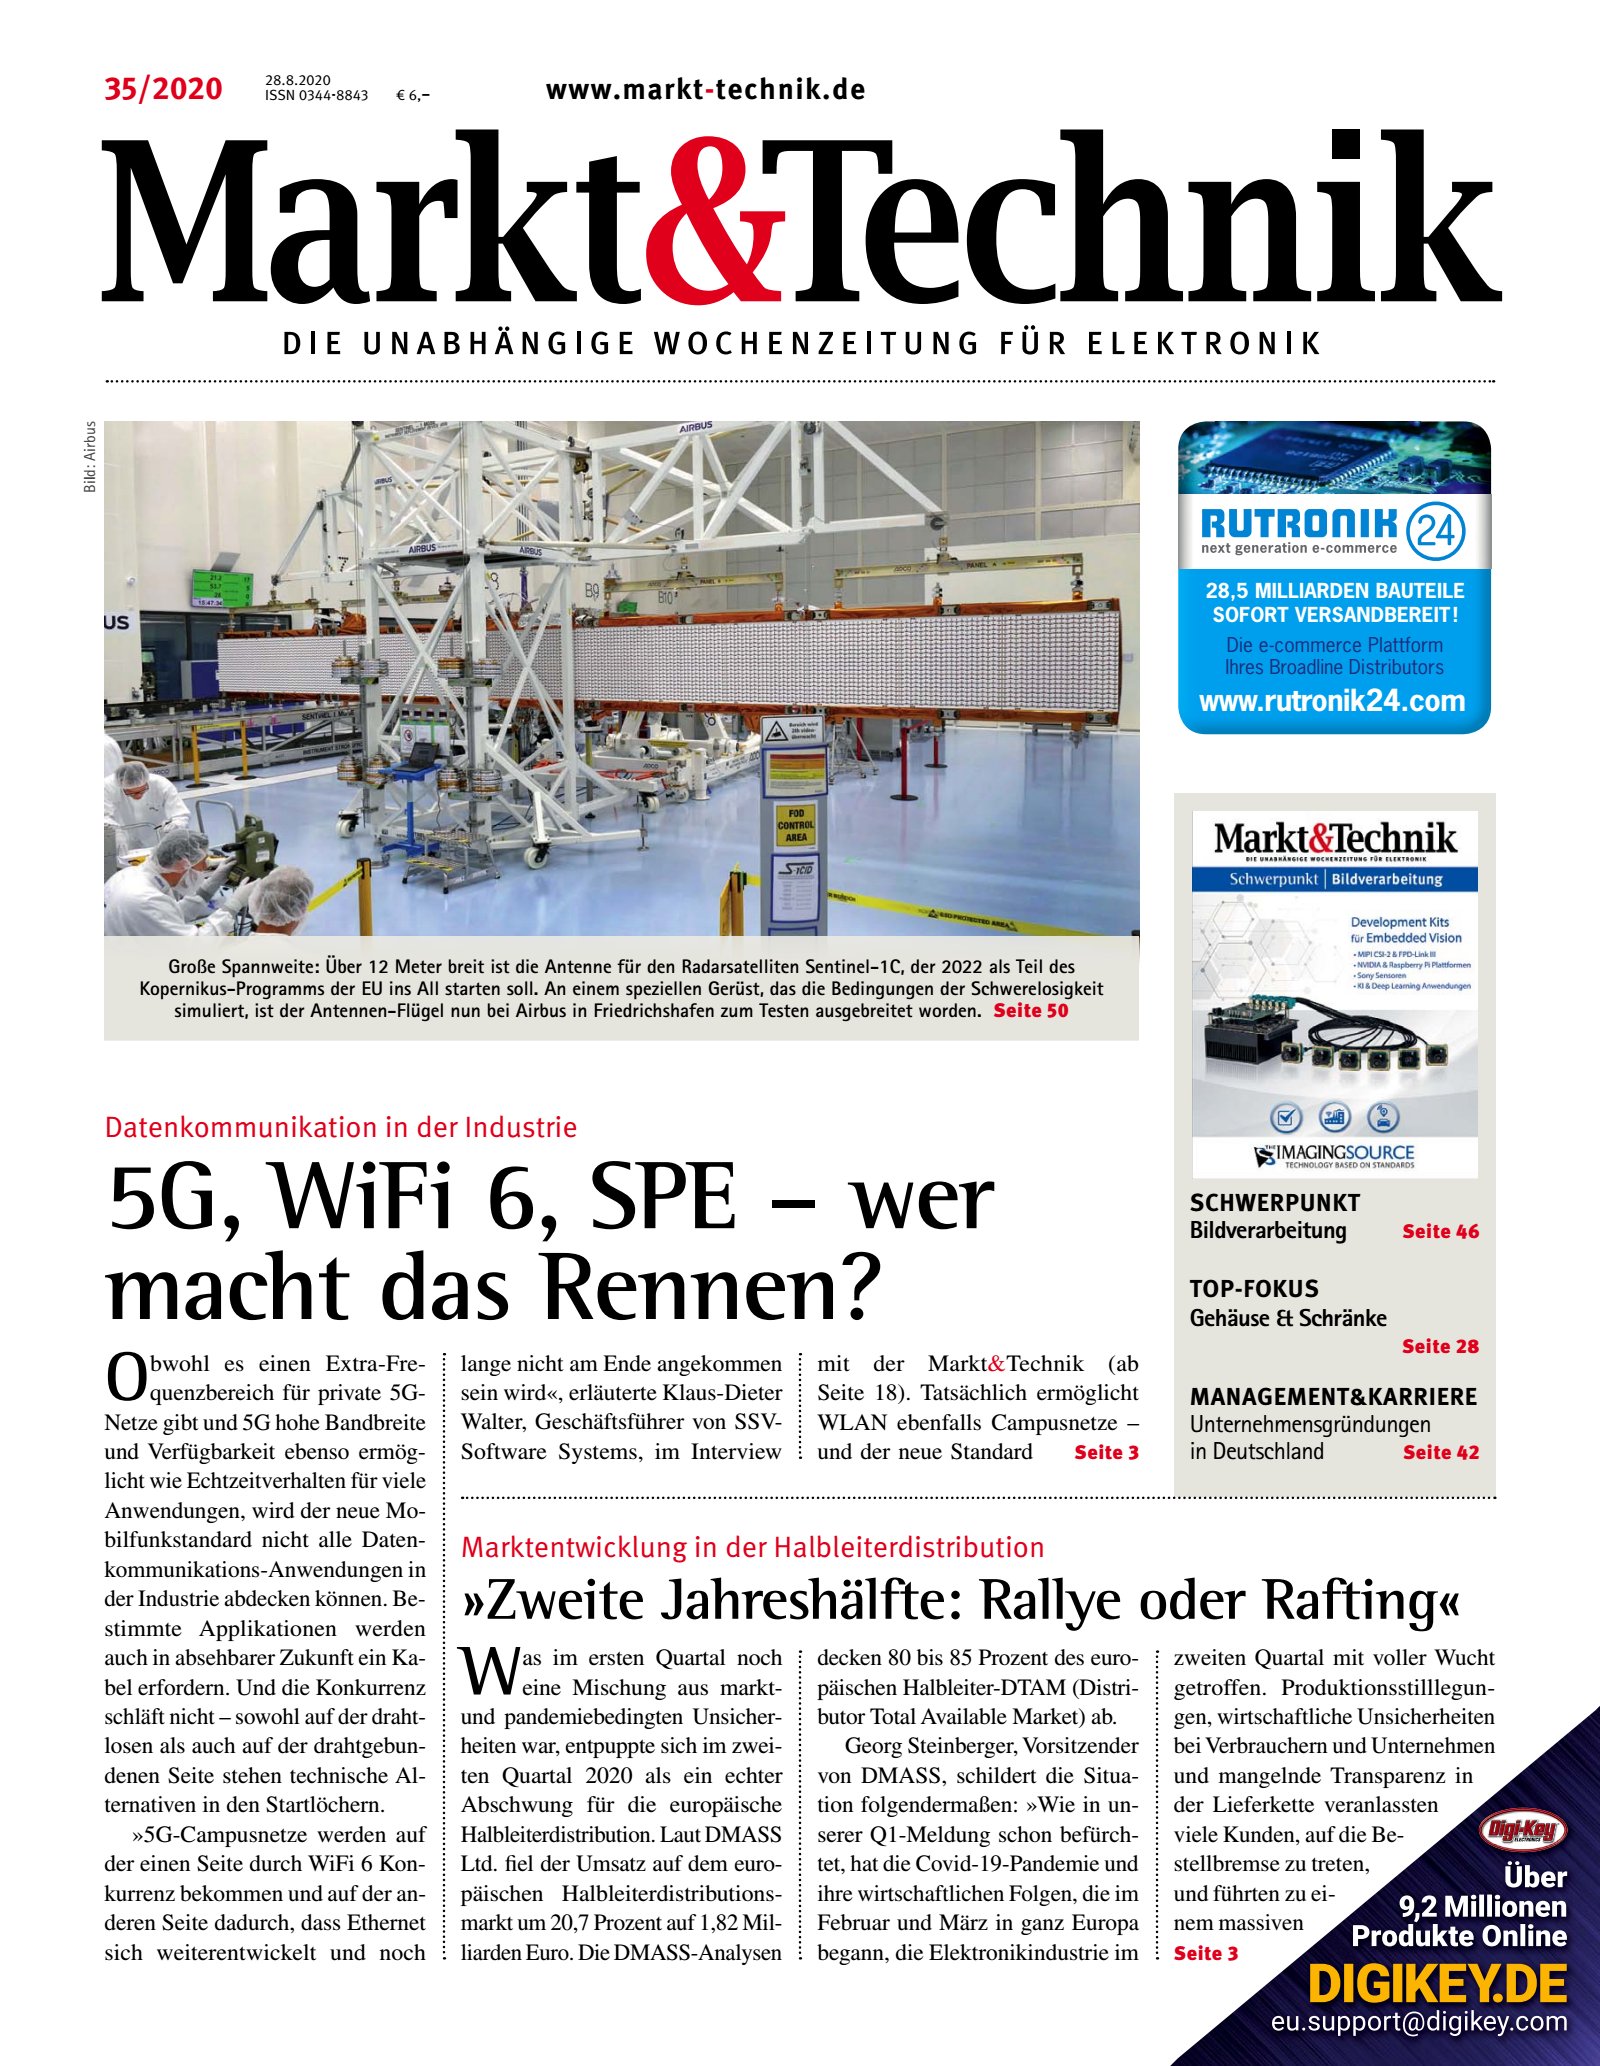 Markt&Technik 35/2020 Digital